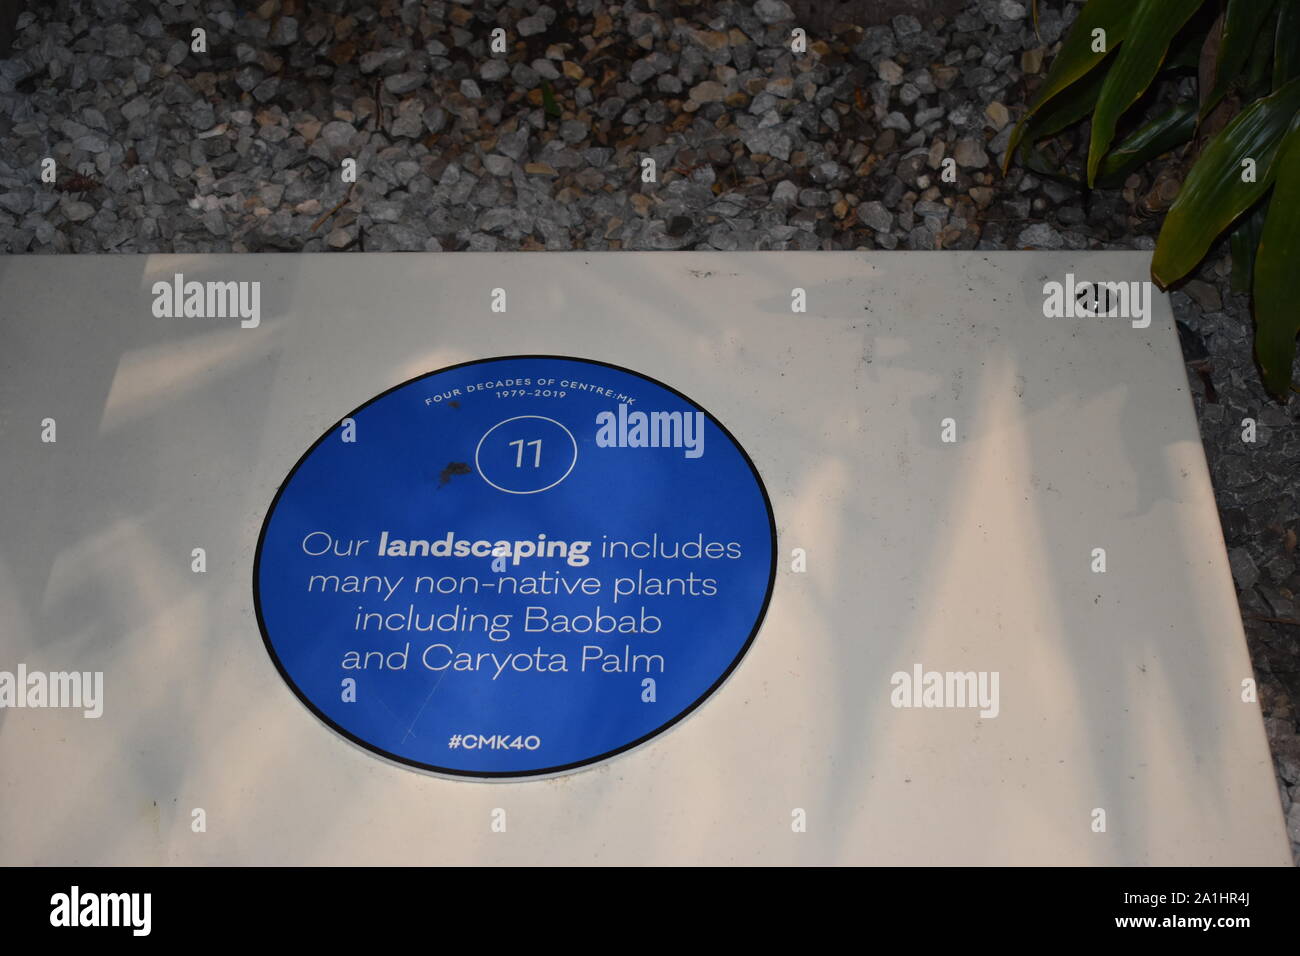 Pour célébrer leur 40e anniversaire, centre:mk (Milton Keynes' premier et plus grand centre commercial) ont créé un sentier blue plaque de 40 faits fabuleux. Banque D'Images